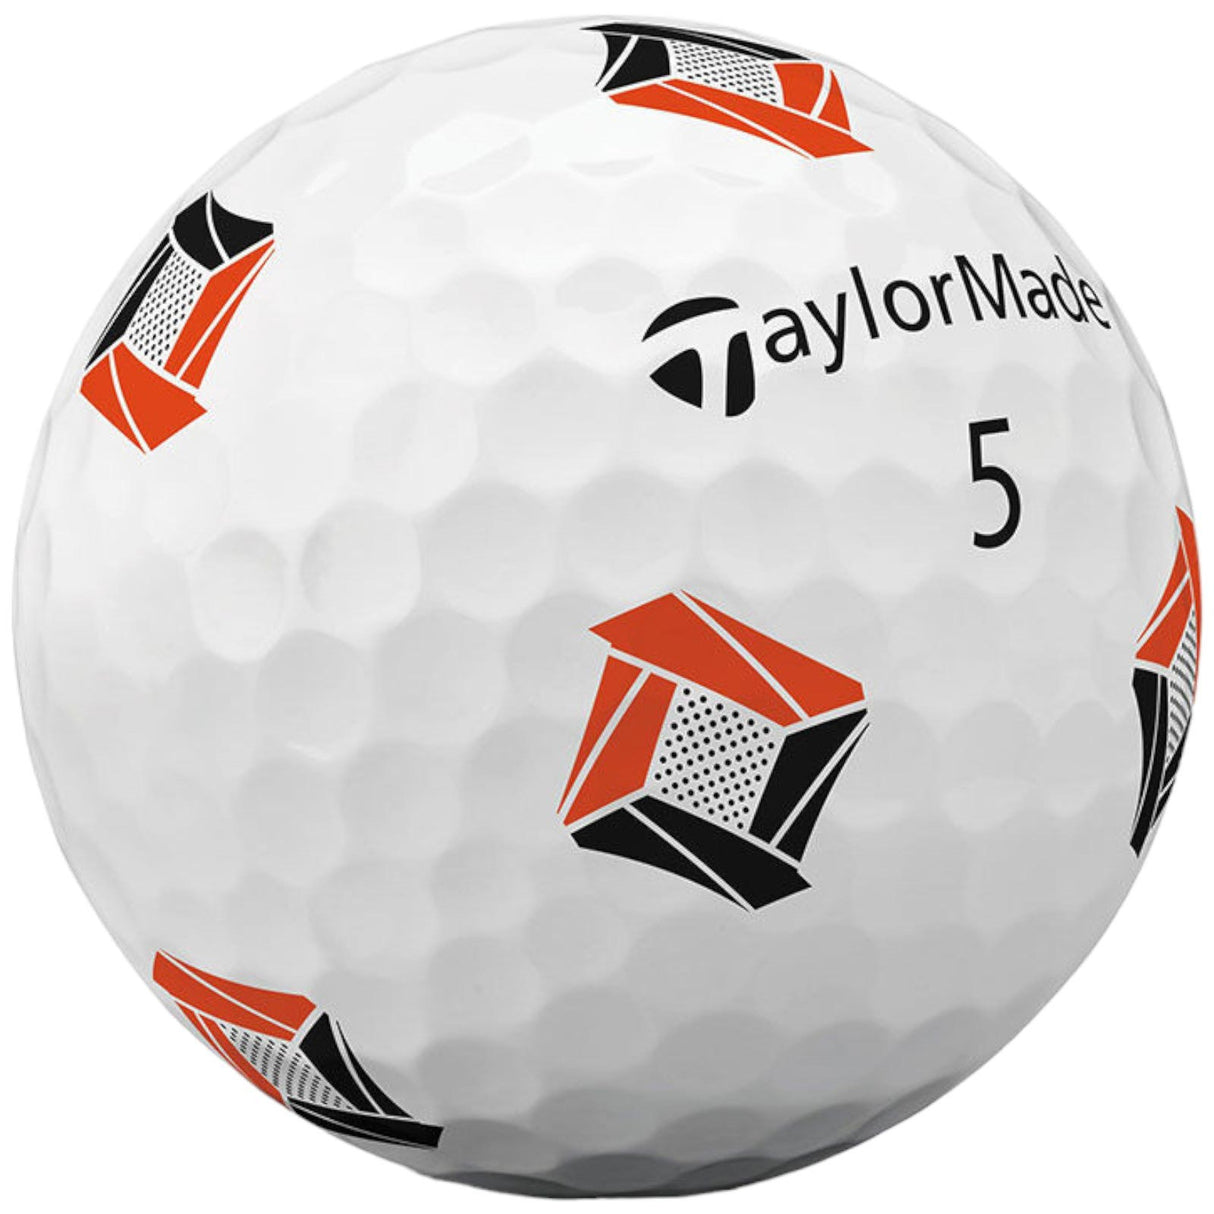 Taylormade TP5 Pix 3.0 23 Golf Ball Wht